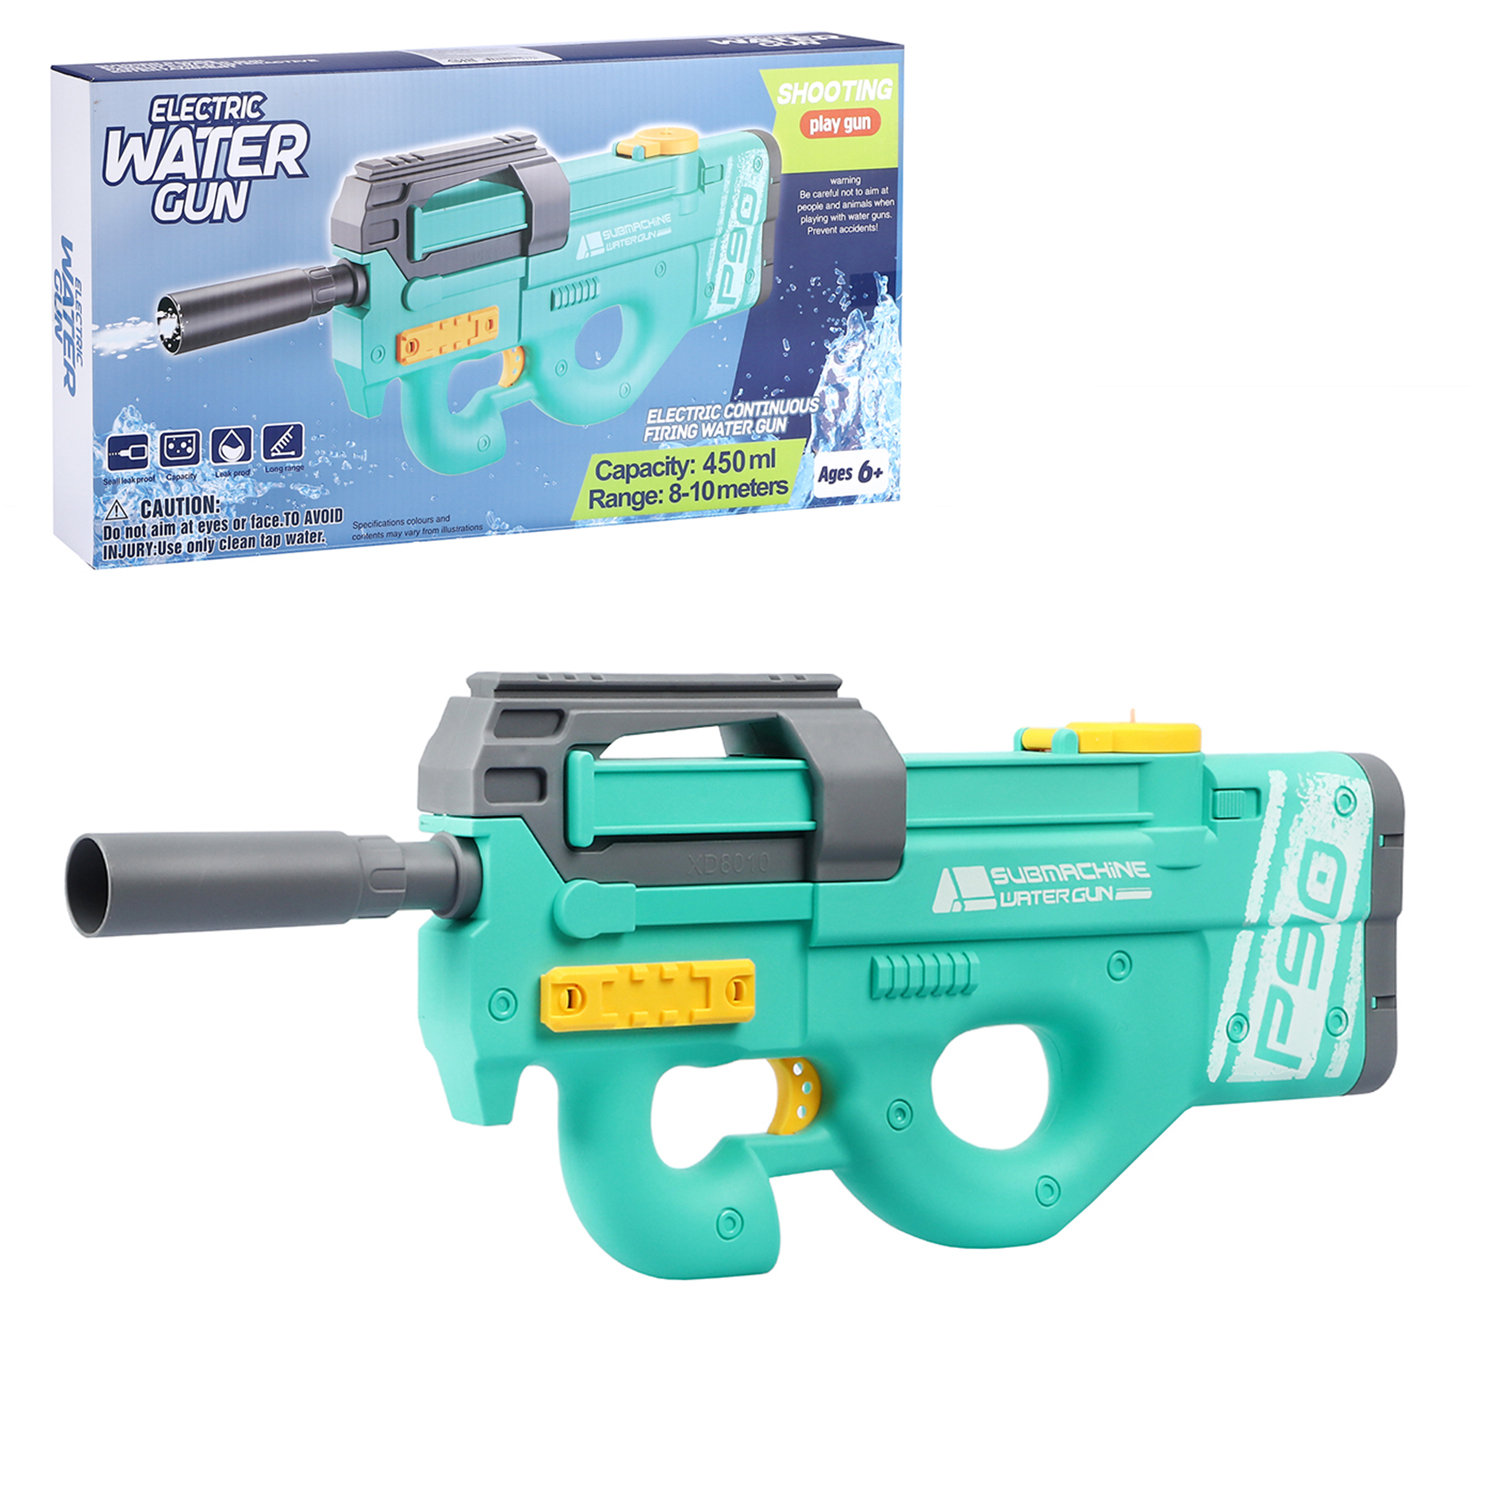 Водный пистолет игрушечный, электропистолет, на аккумуляторе, бирюзовый, JB0211237 водяное оружие на аккумуляторе пистолет игрушечный с функцией спрея водный бой jb0211497